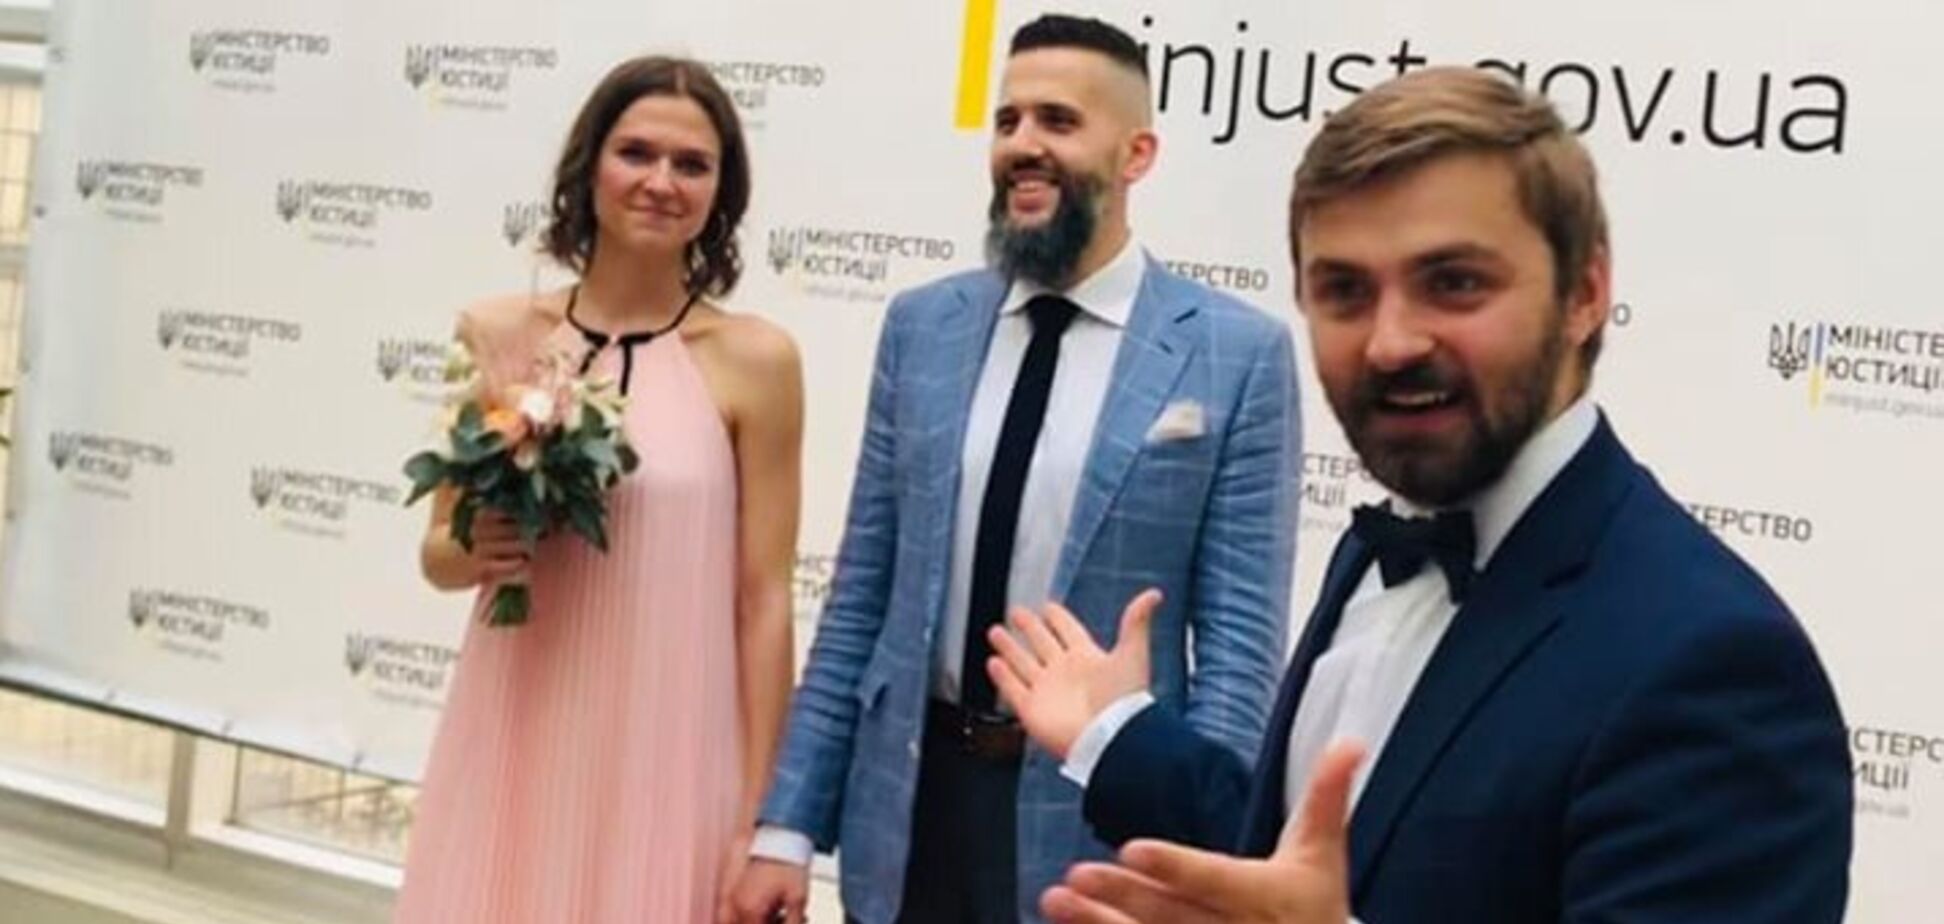 Головний митник України одружився: з'явилися фото з весілля